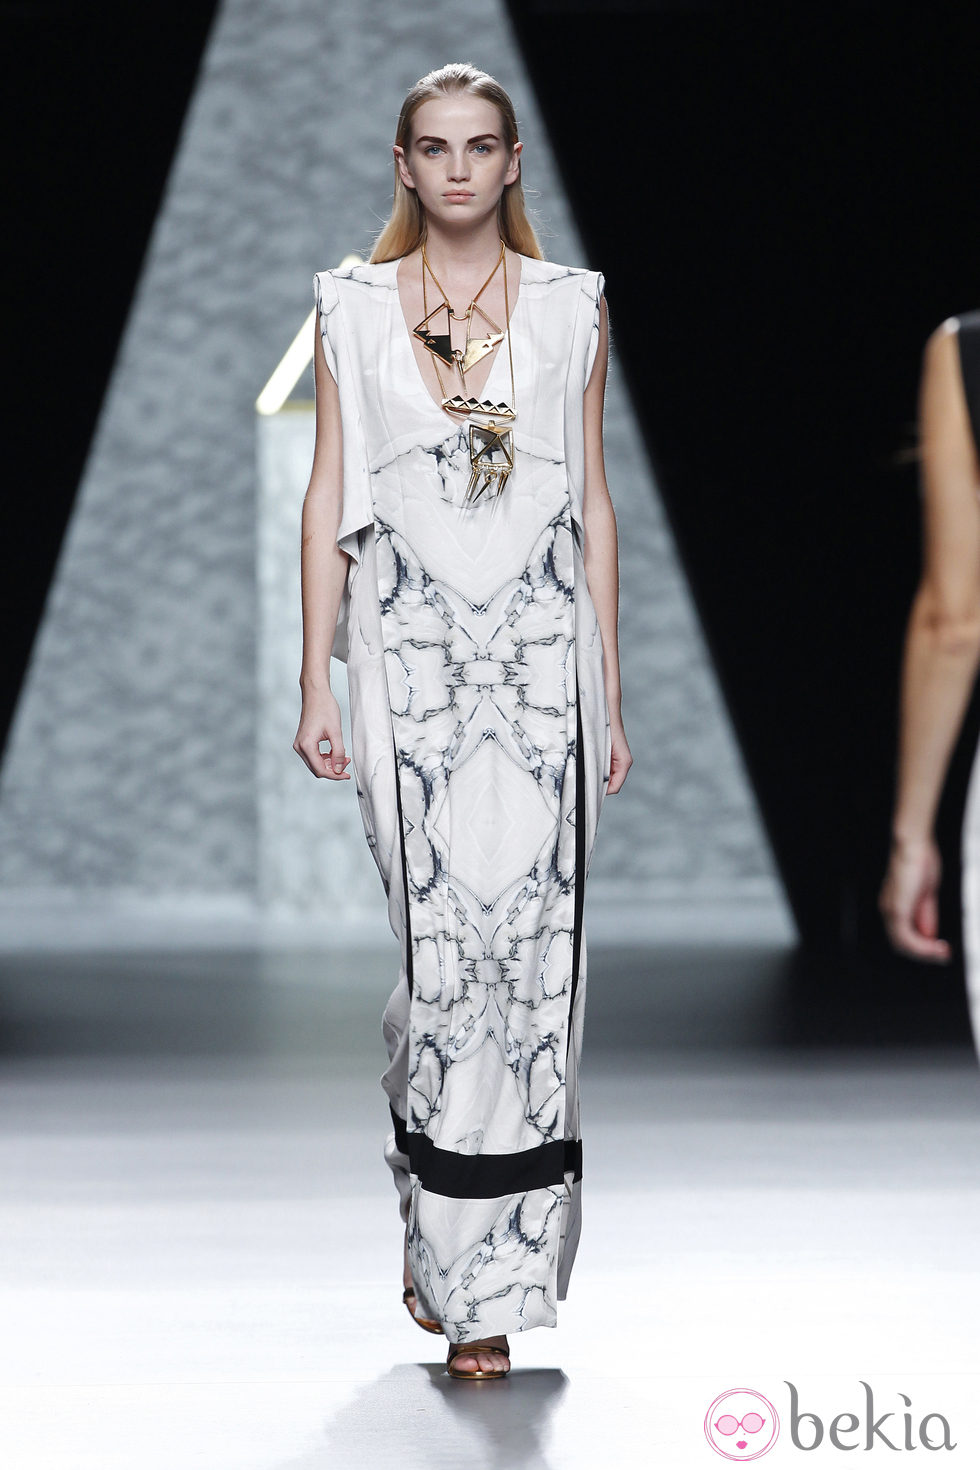 Vestido de superposiciones de la colección primavera/verano 2014 de Ana Locking en Madrid Fashion Week